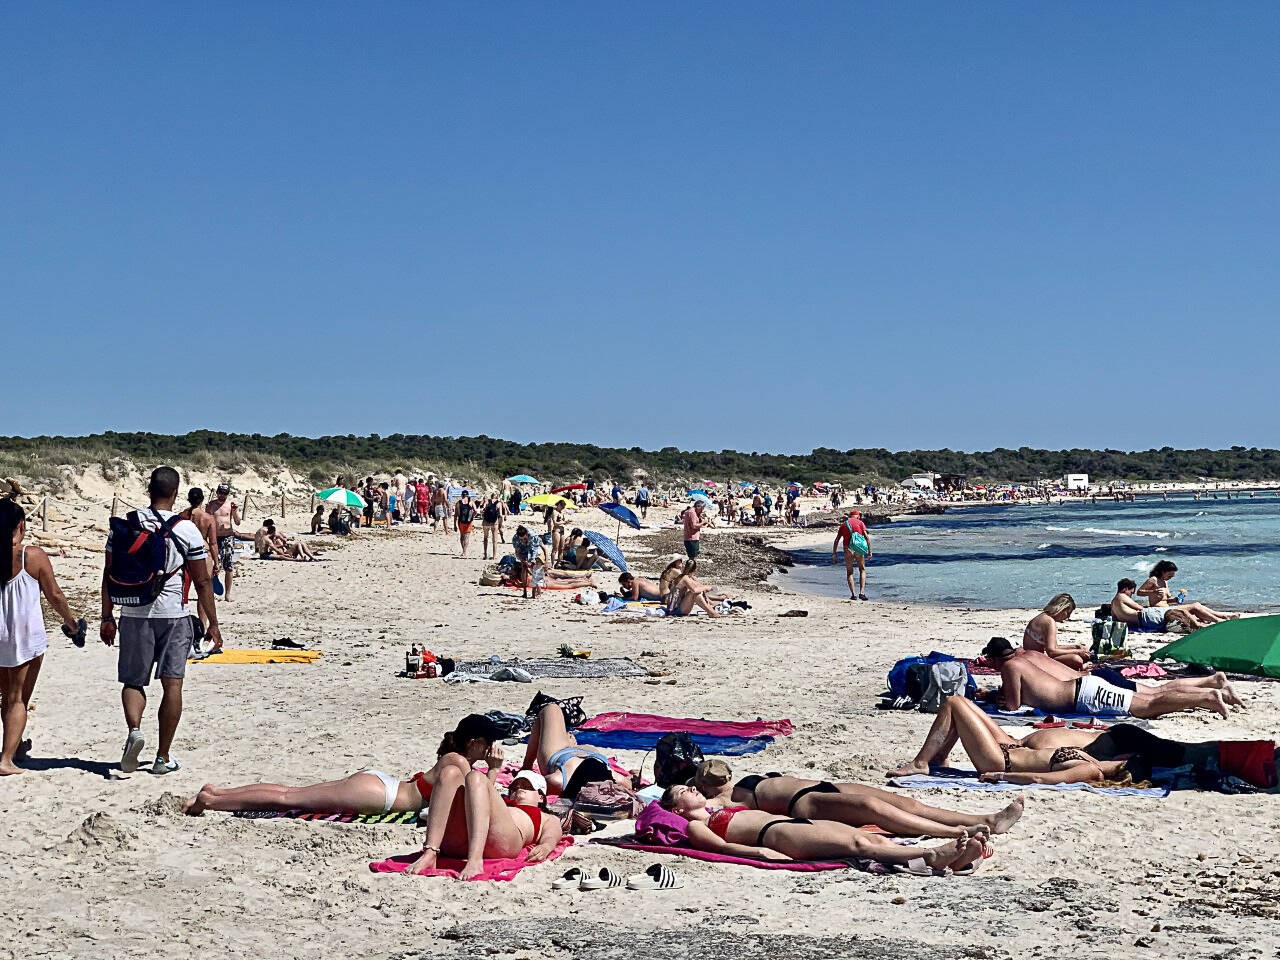 Party am Strand von Mallorca macht richtig Spaß, ist aktuell aber keine so gute Idee. (Symbolfoto)